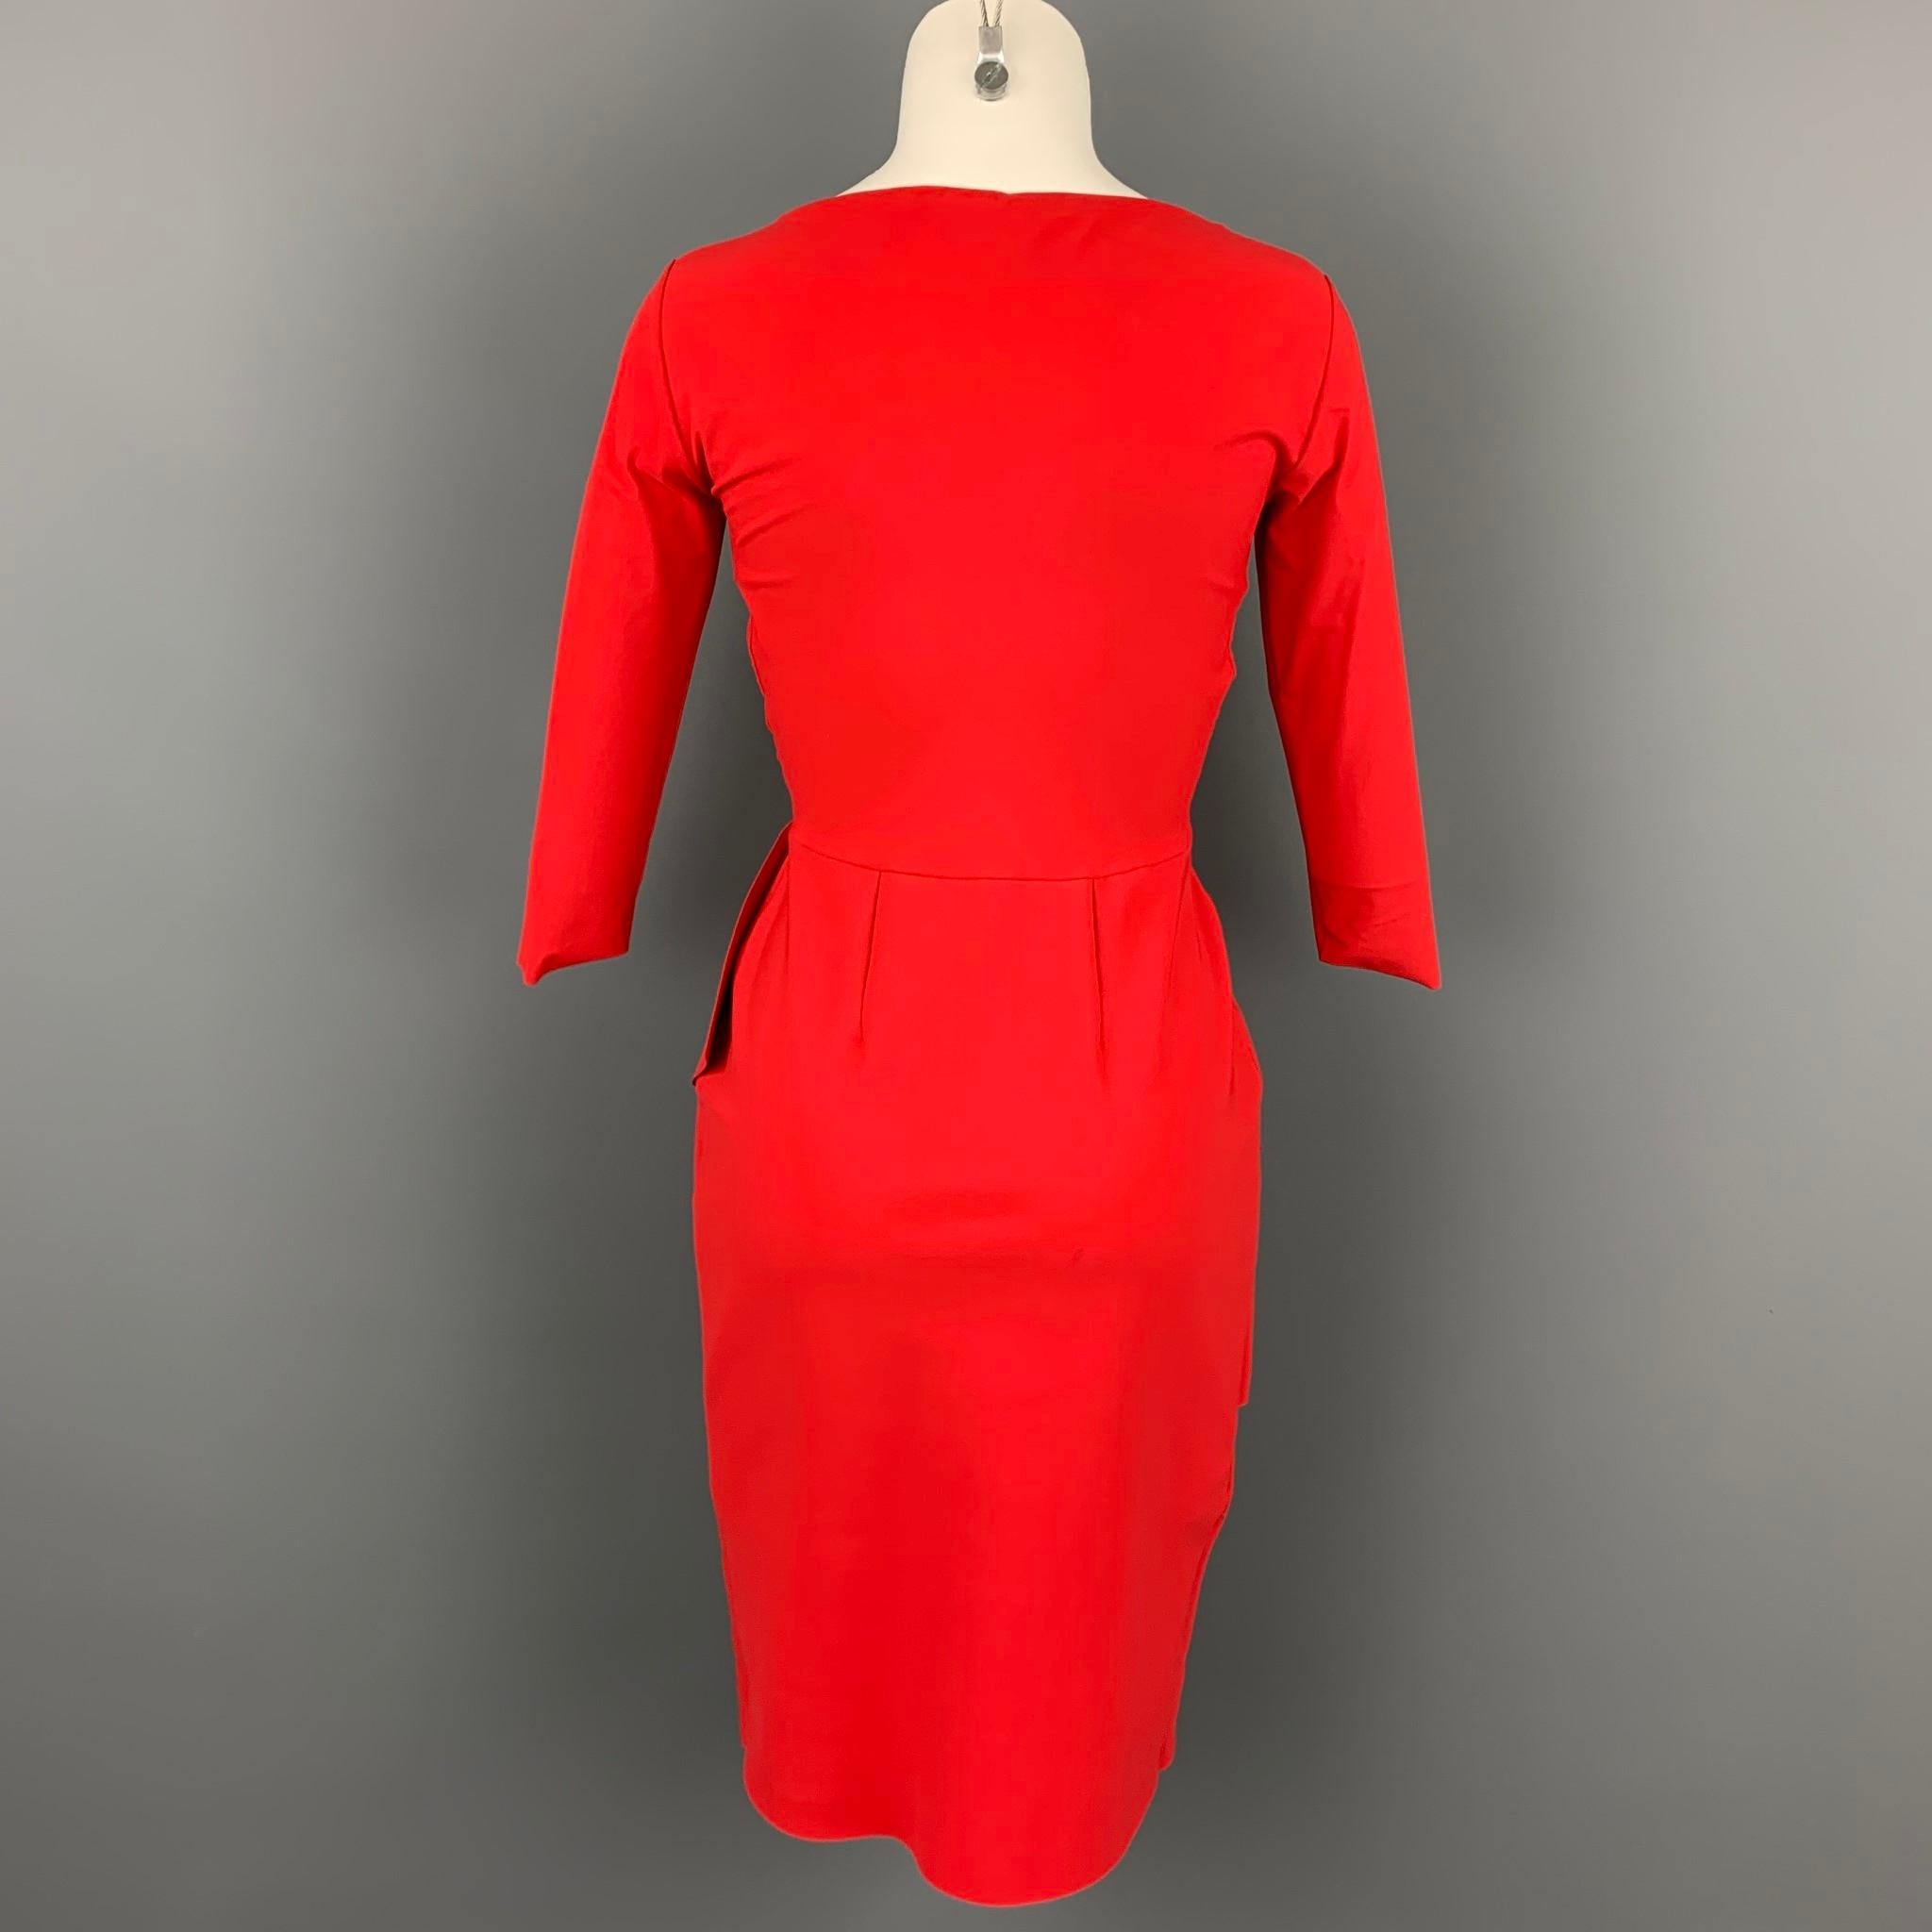 chiara boni red dress